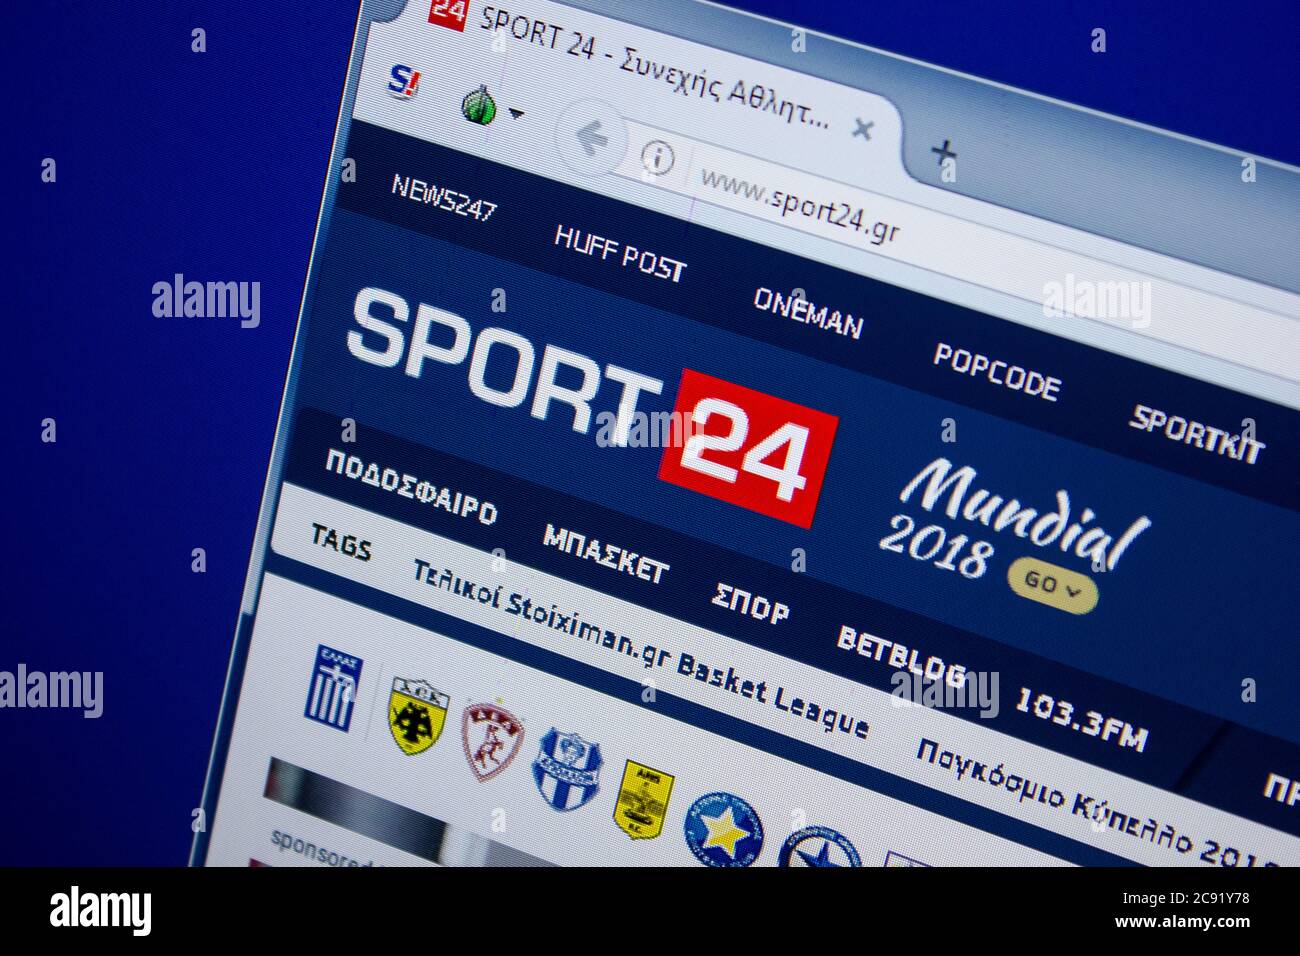 Sport24 Banque de photographies et d'images à haute résolution - Alamy